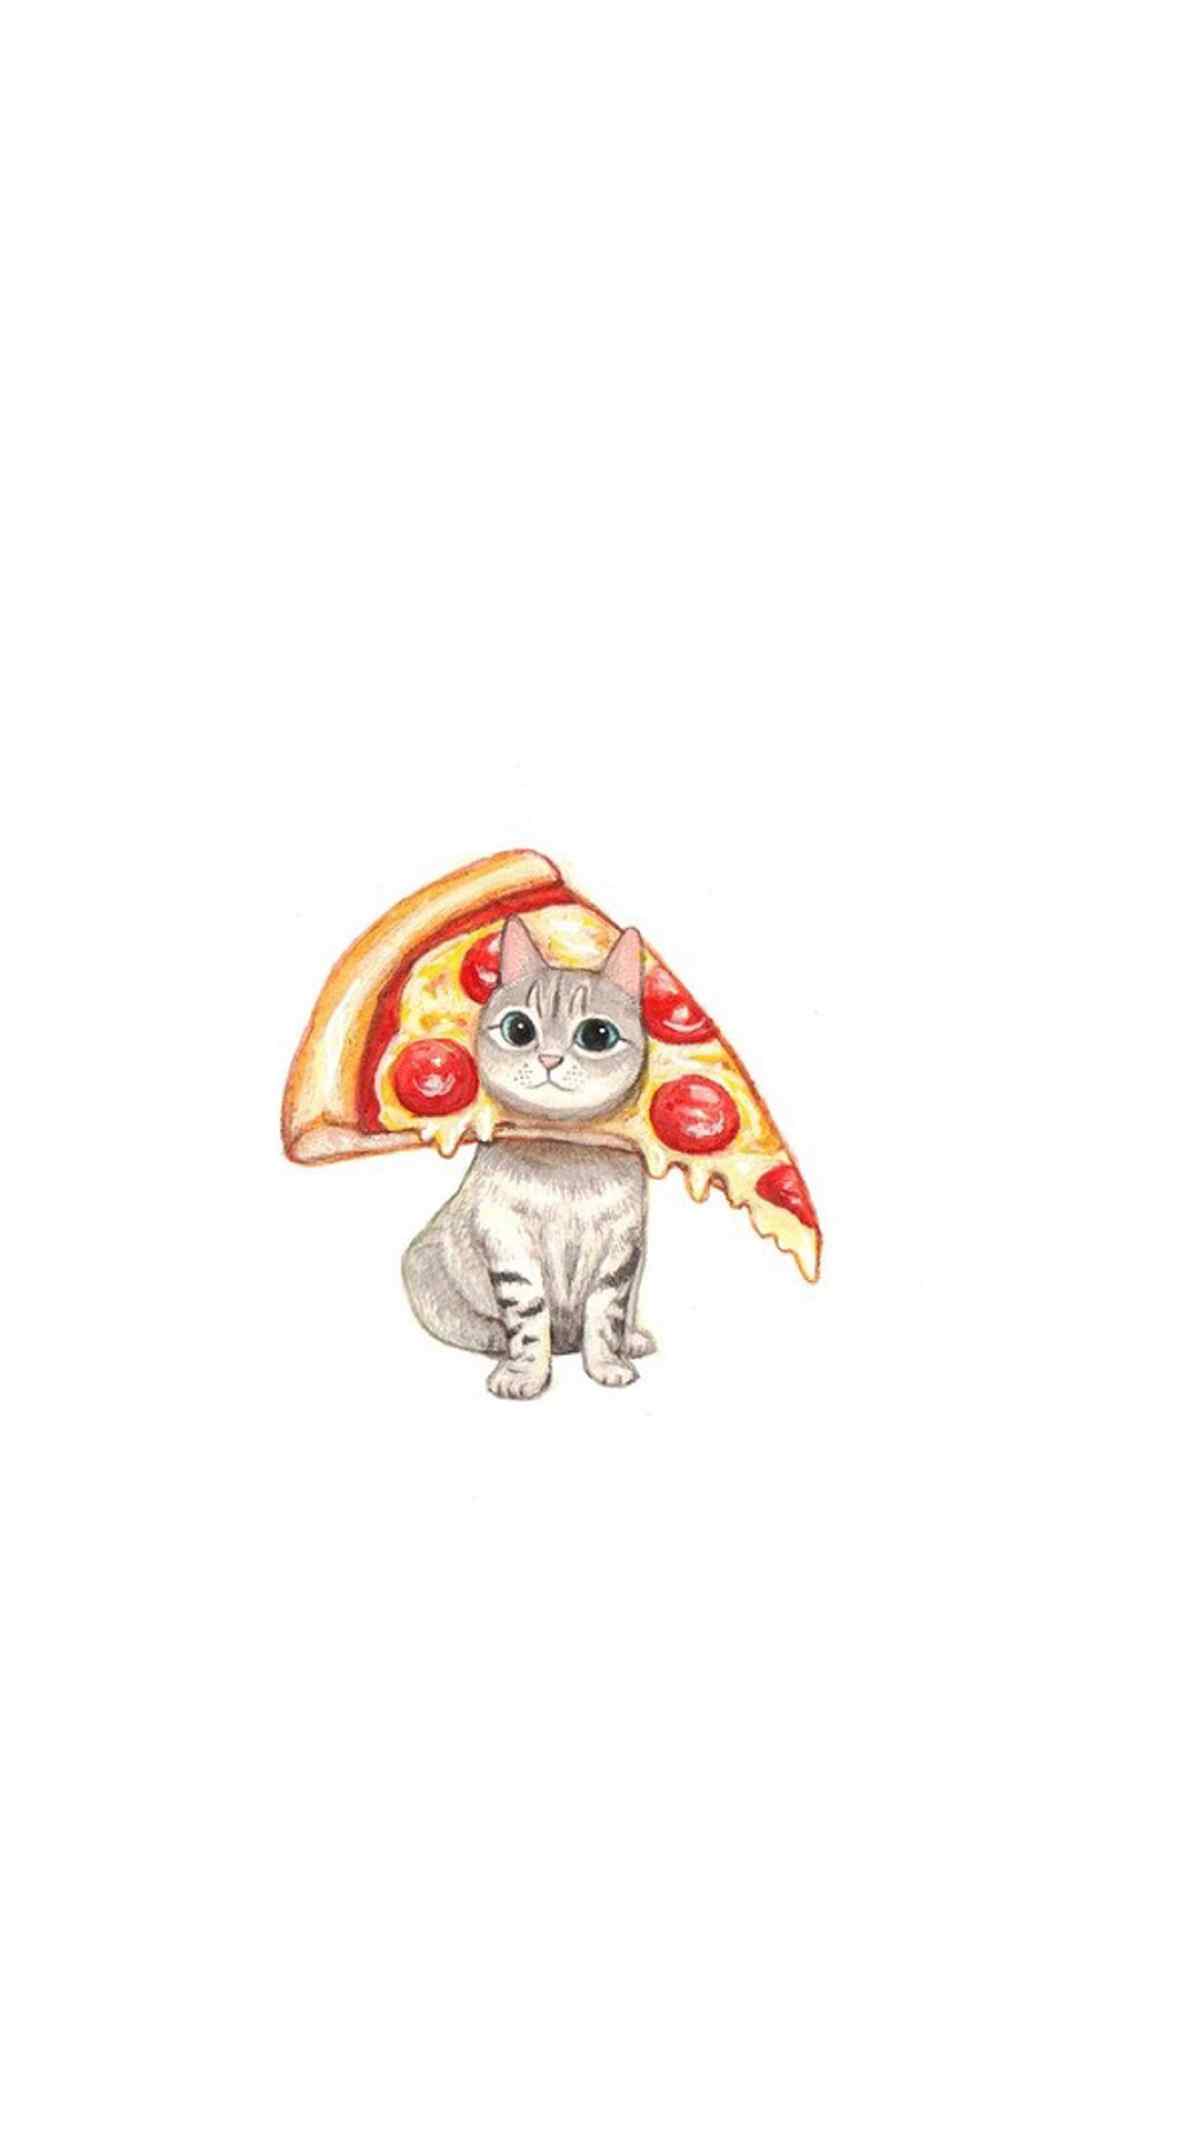 可爱的小猫咪与披萨图片手机壁纸